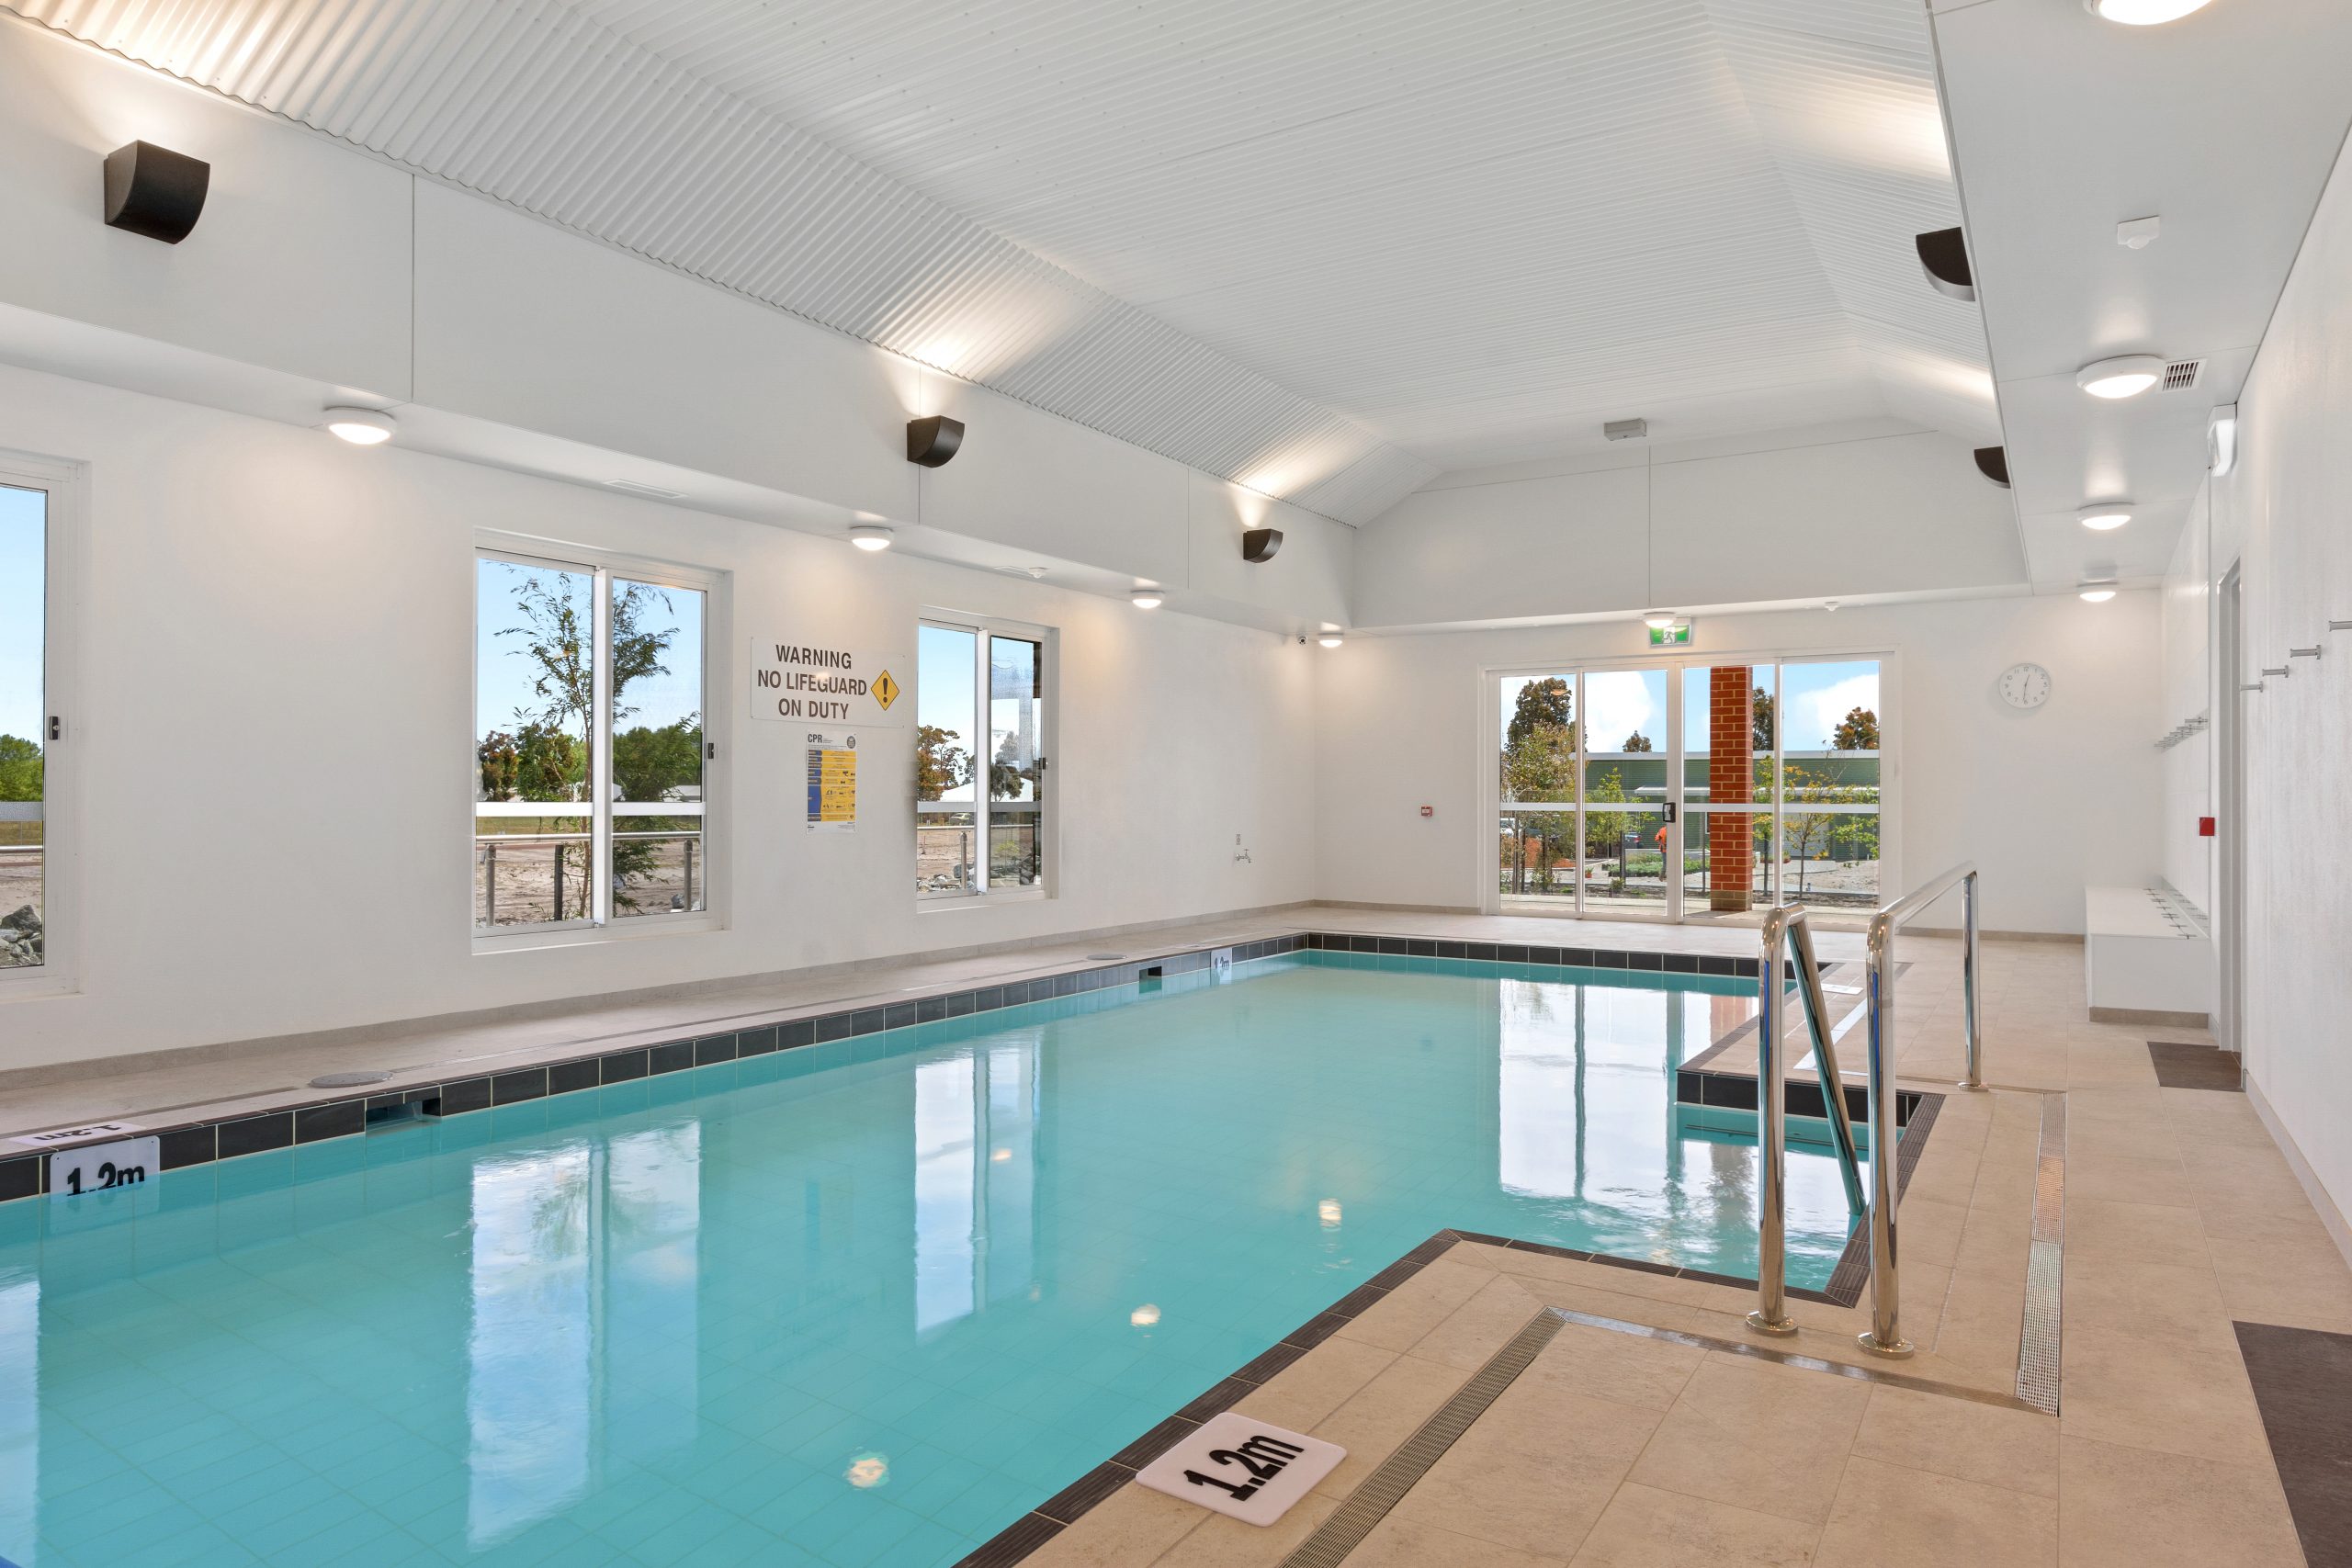 Edenlife Australind indoor heated pool